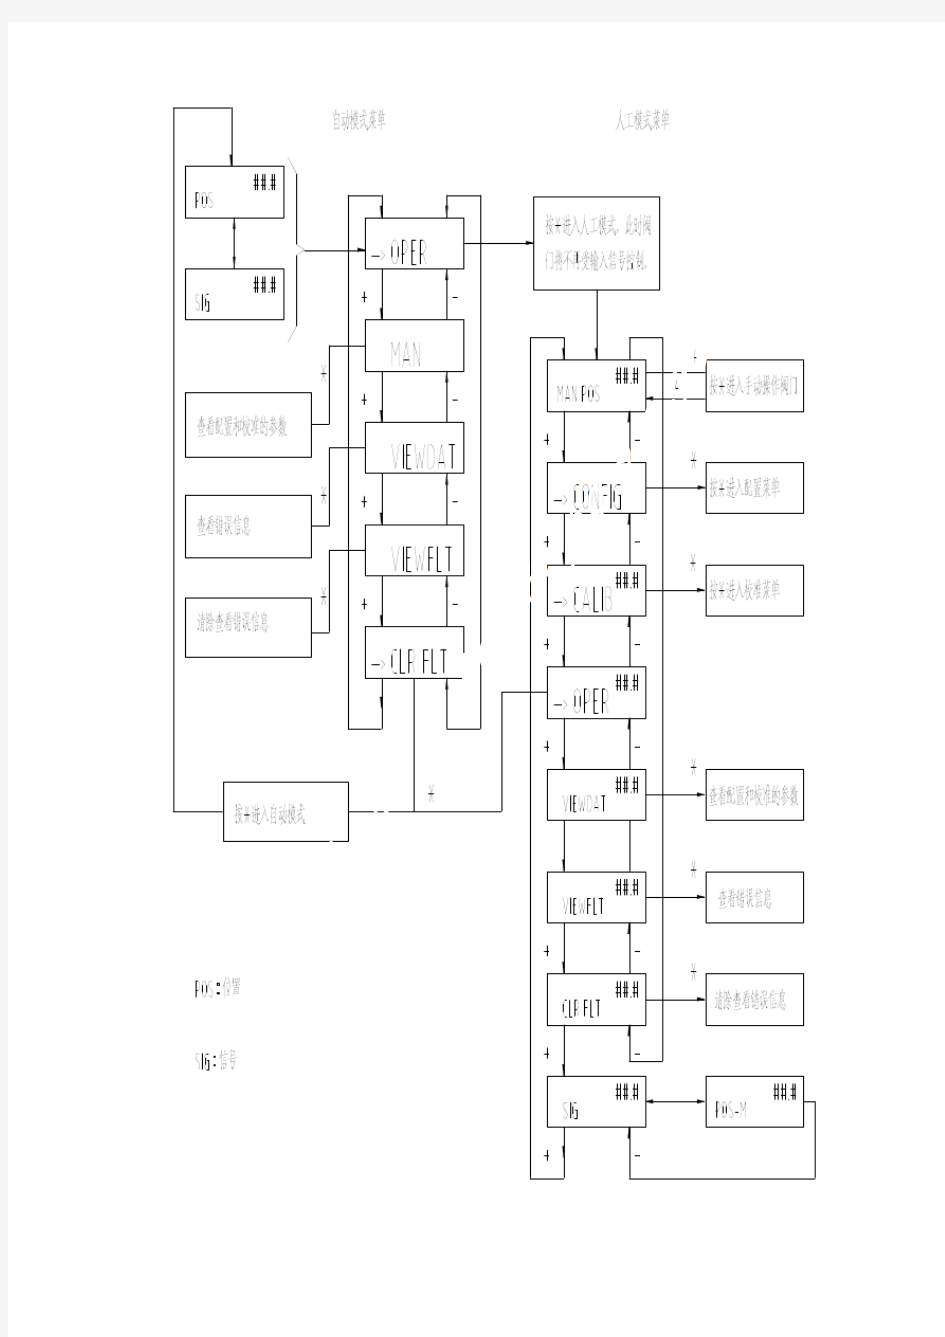 梅索尼兰SVI II定位器调试流程(中)